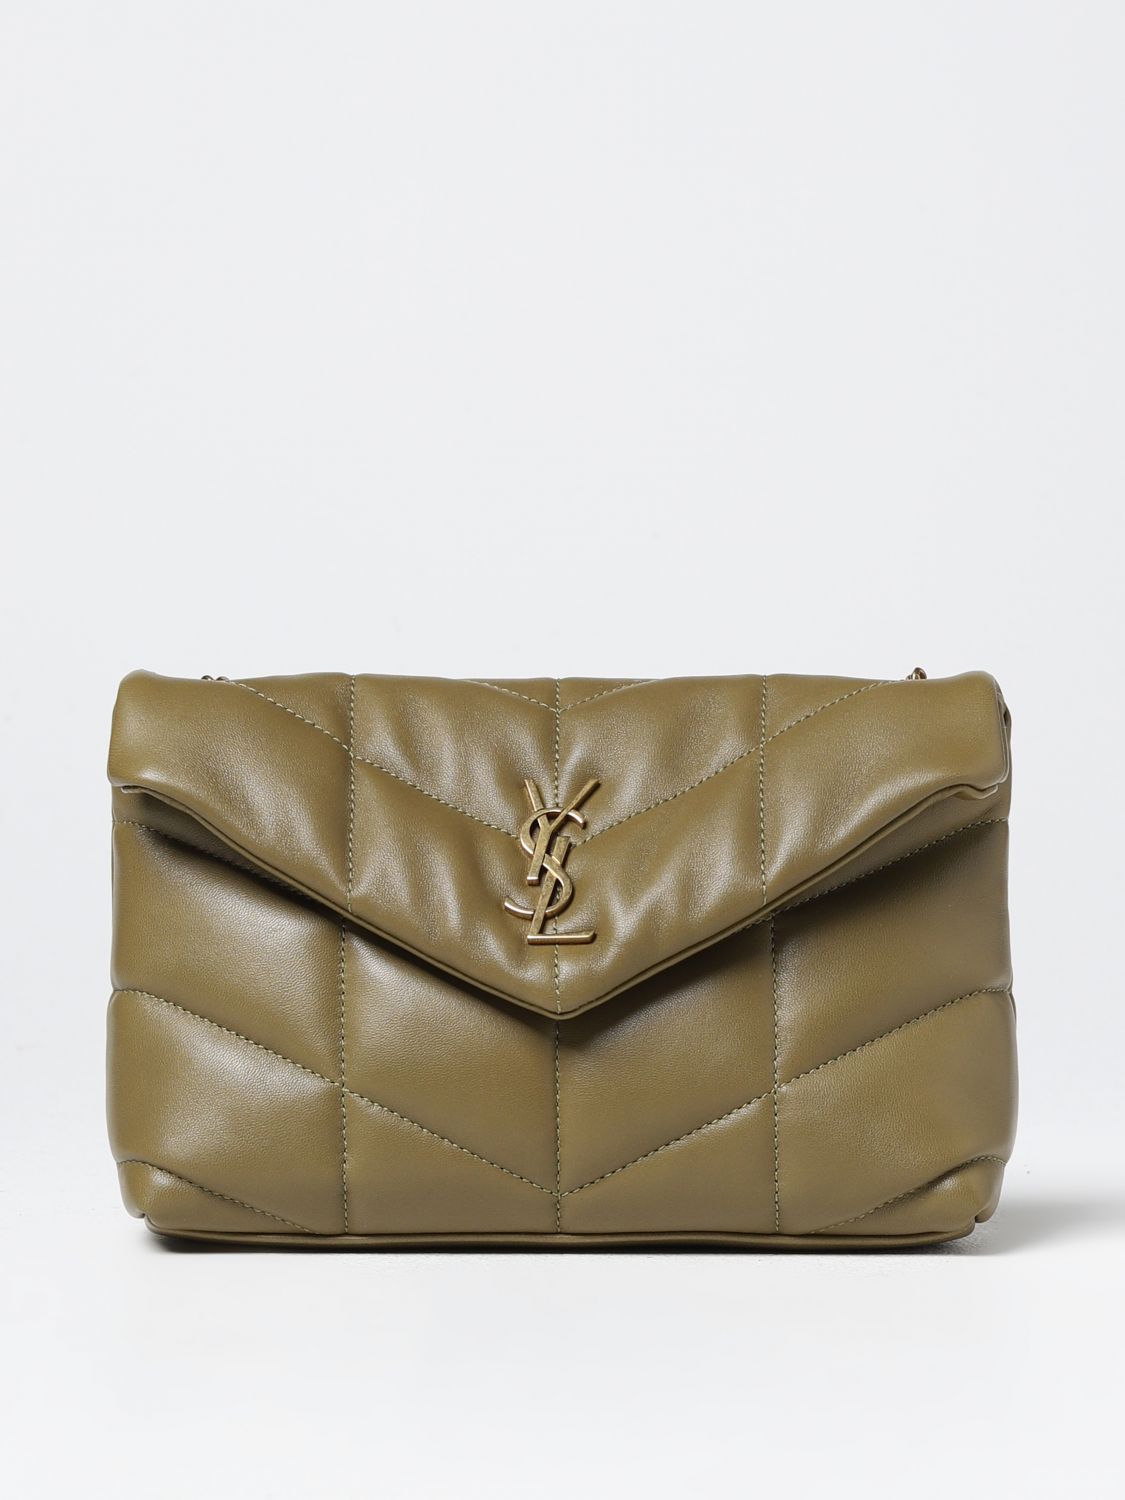 SAINT LAURENT: Puffer Toy quilted leather bag - Green  Saint Laurent  shoulder bag 6203331EL07 online at